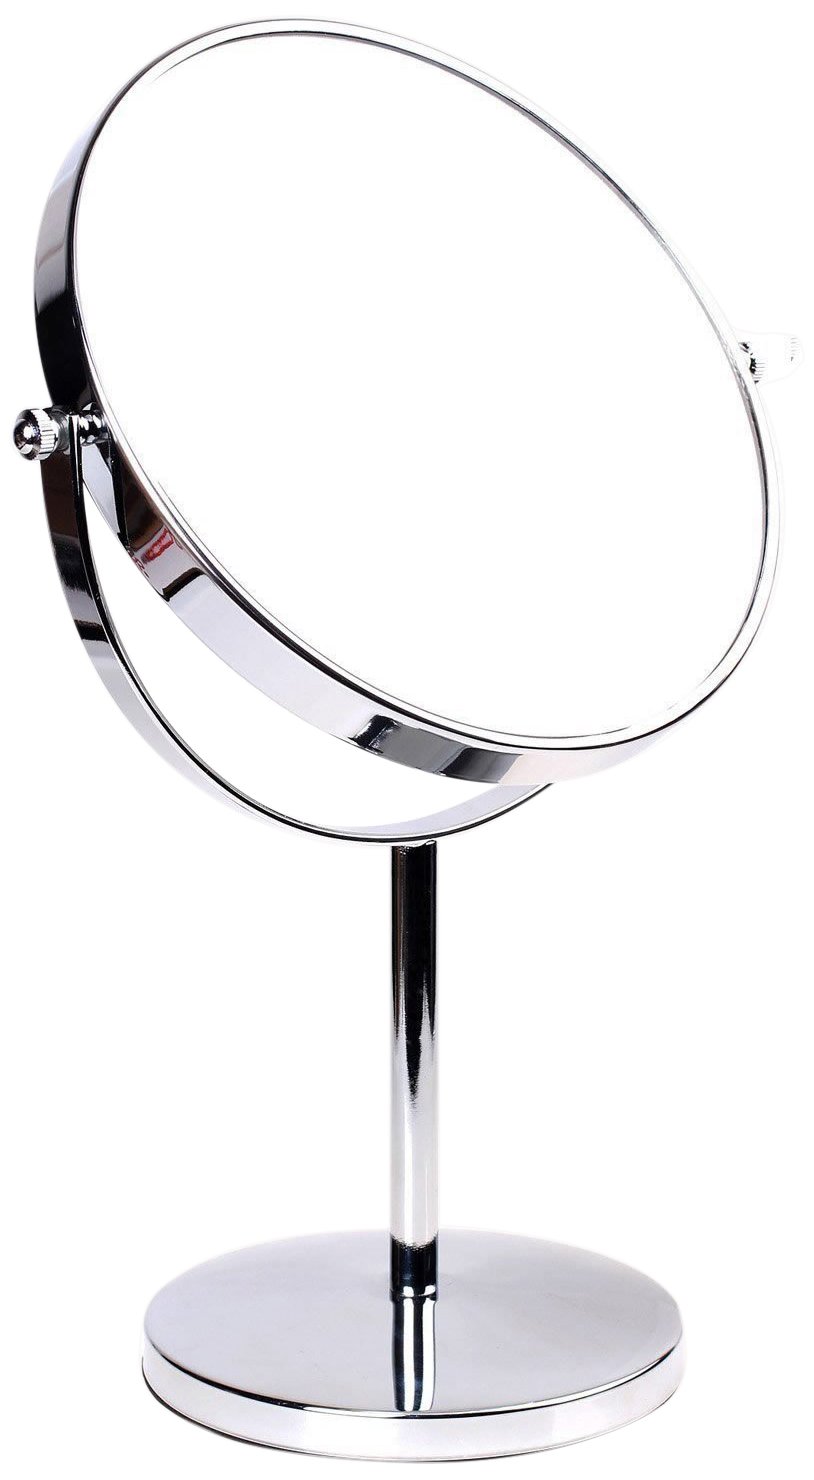 HIMRY Standspiegel 5X Vergrößerung, 8 inch, Kosmetikspiegel 360° drehbar. Verchromten Schminkspiegel Rasierspiegel Badzimmerspiegel, Zweiseitig: Normal+ 5fach Vergrößerung, KXD3108N-5x, Silber, 5-fach